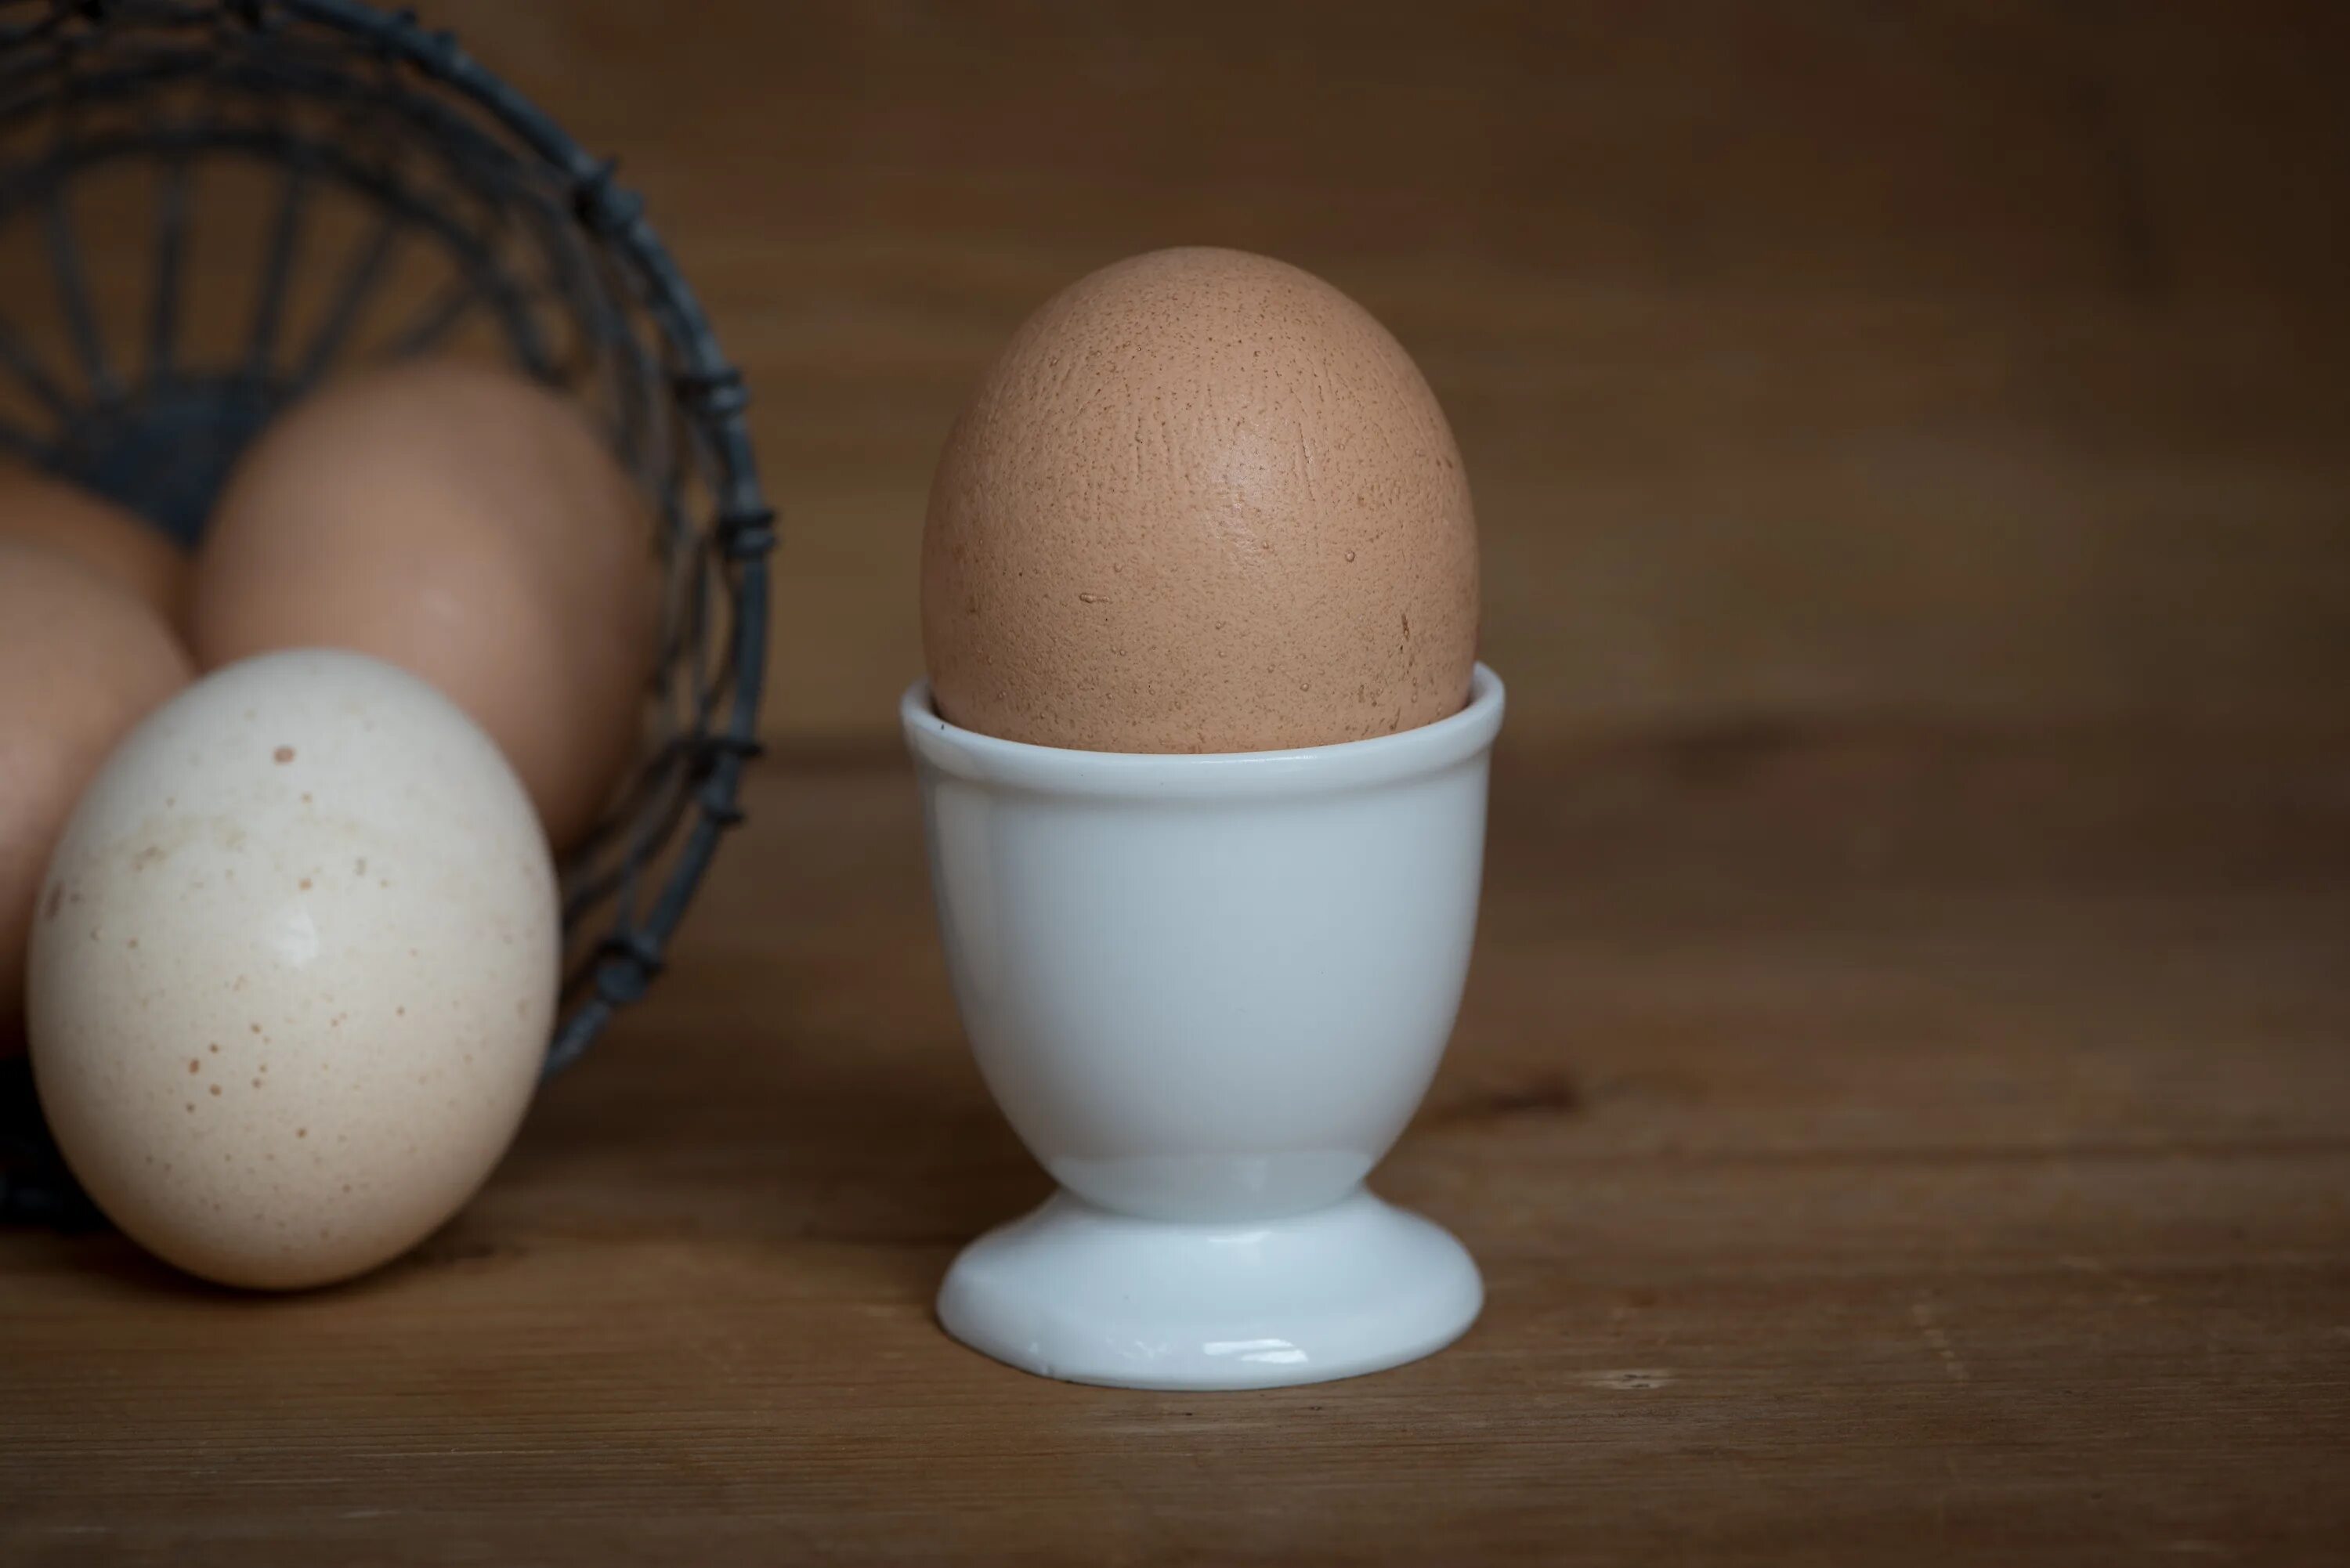 6 грамм яиц. Яйцо куриное. Яйцо (пищевой продукт). Картинка яйца куриные. Яйца готовые.